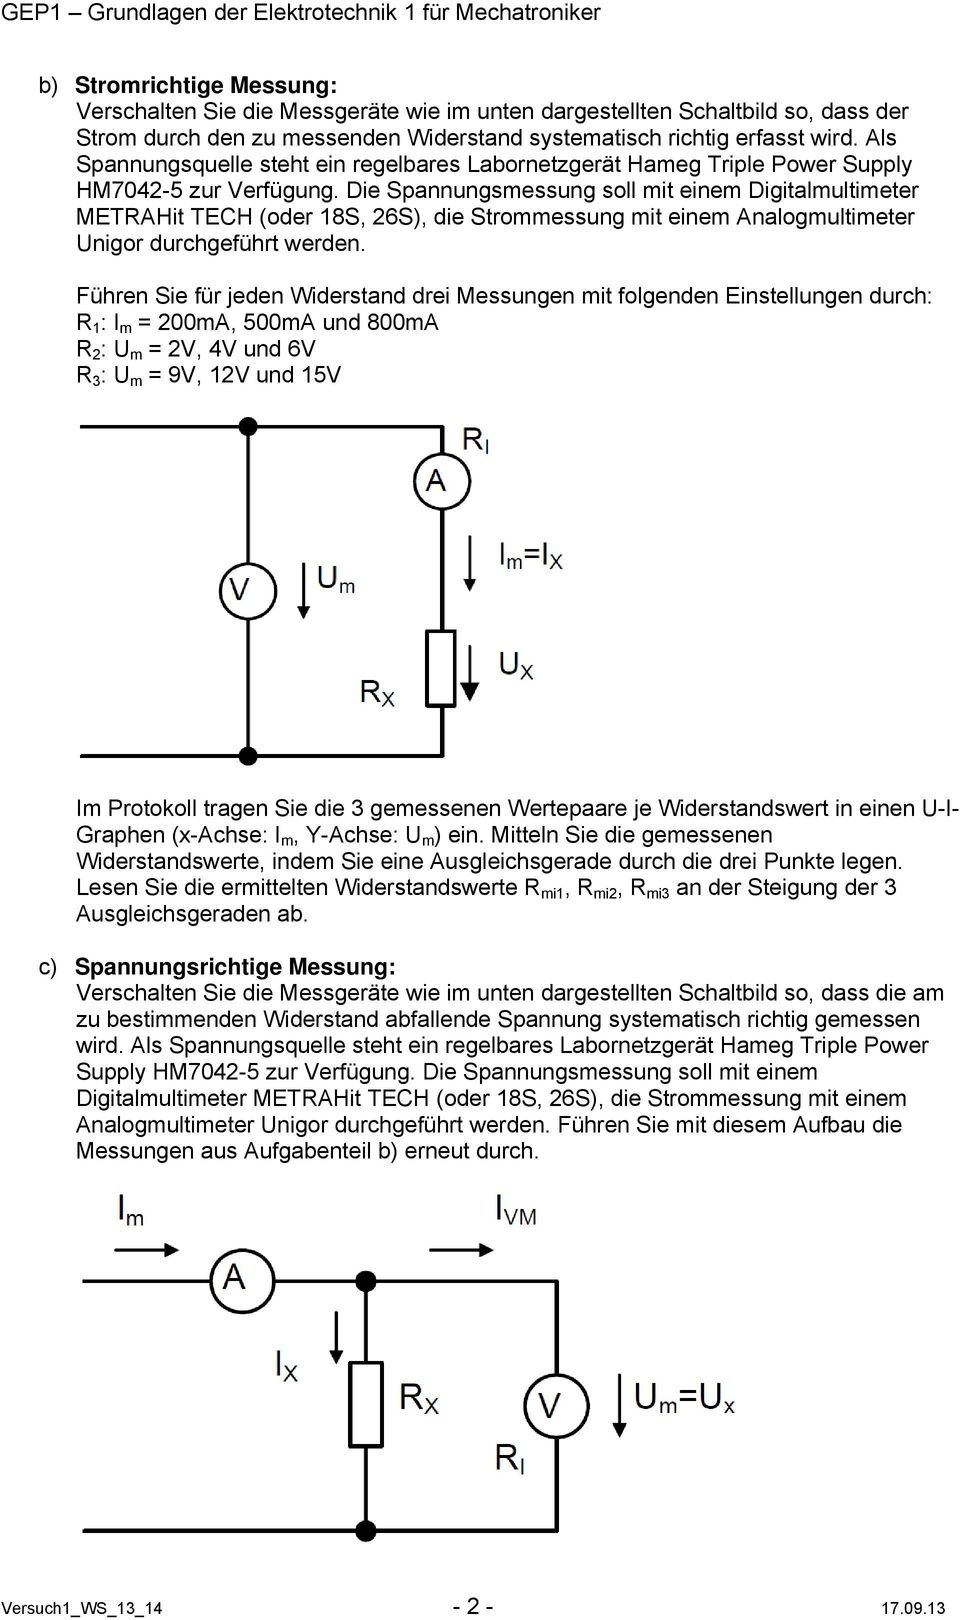 Die Spannungsmessung soll mit einem Digitalmultimeter METRAHit TECH (oder 18S, 26S), die Strommessung mit einem Analogmultimeter nigor durchgeführt werden.